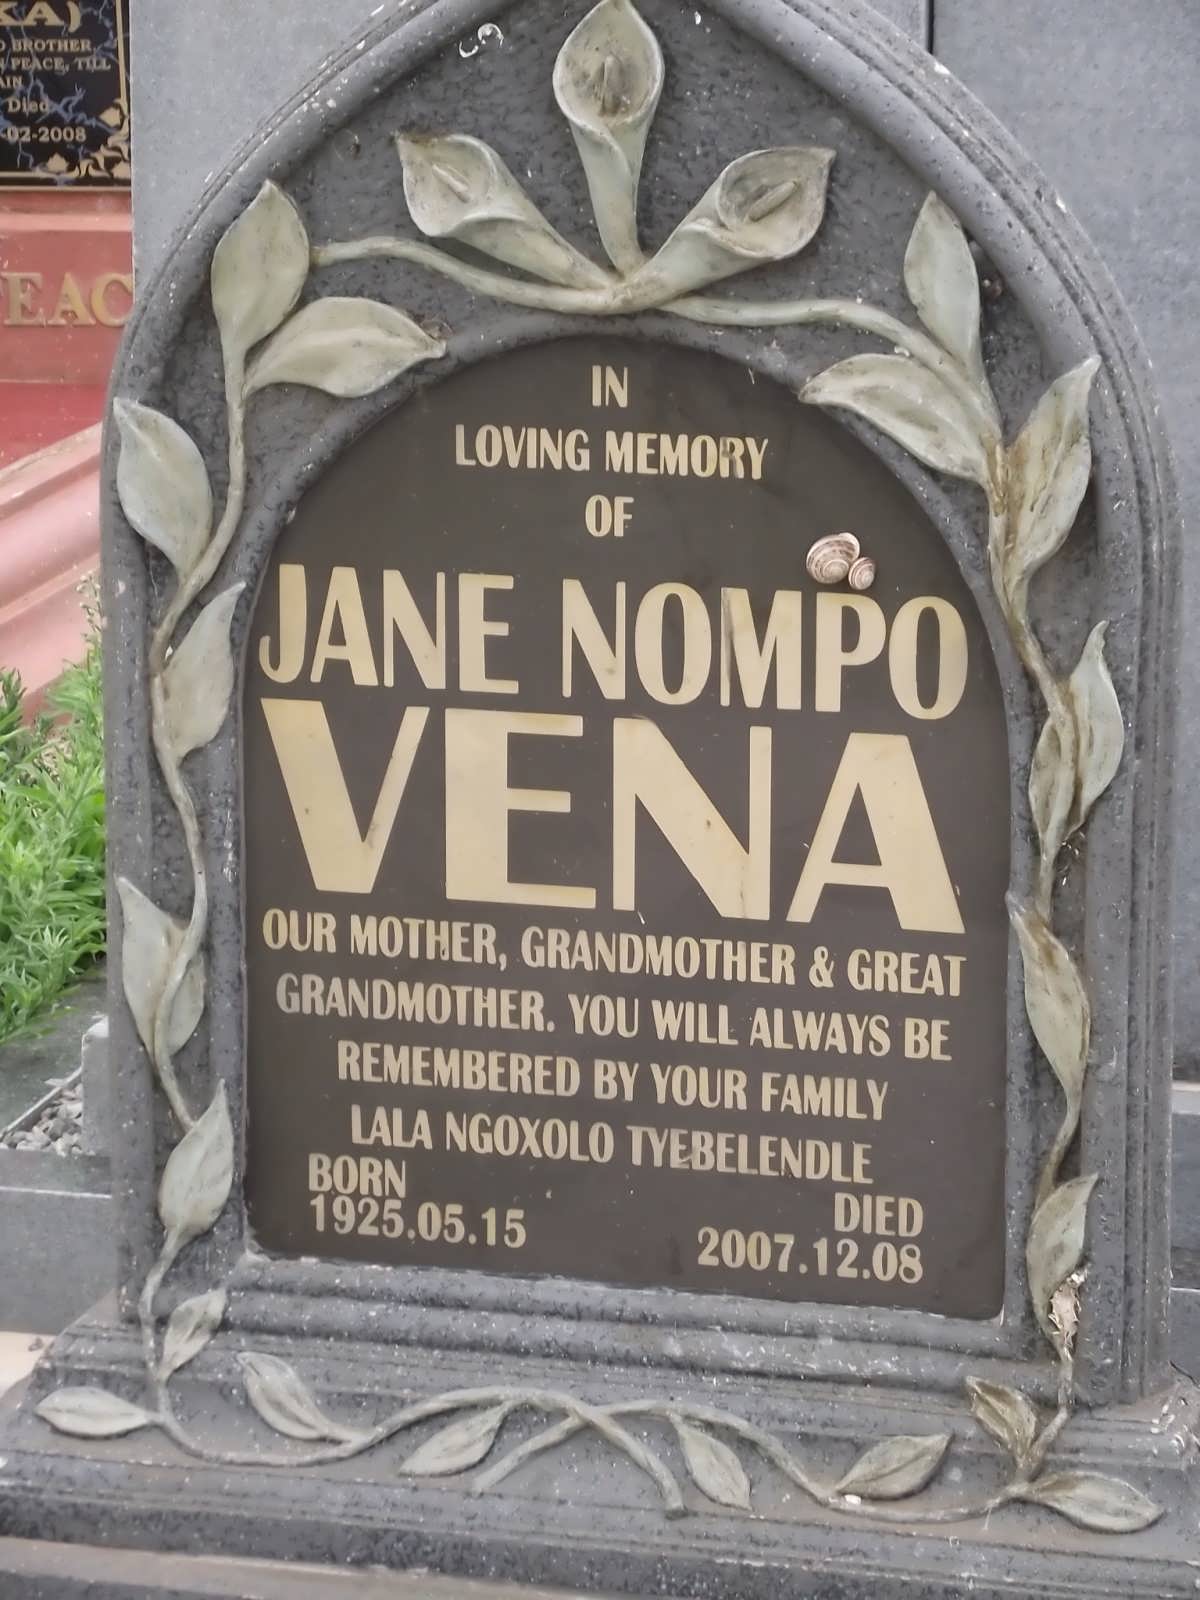 VENA Jane Nompo 1925-2007